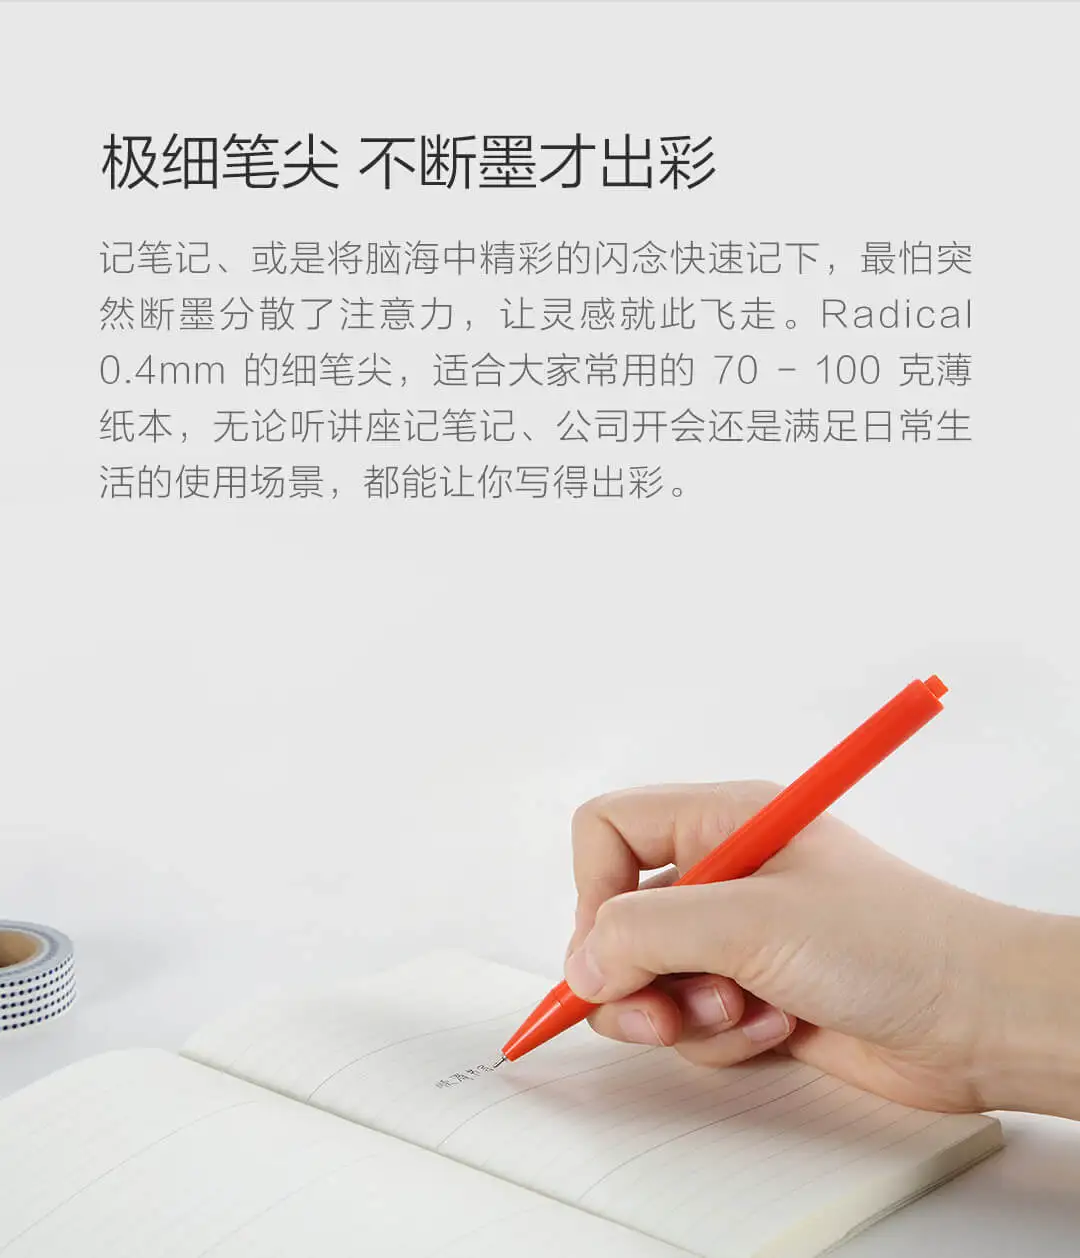 12 шт./компл. новые Xiaomi Mijia радикально Швейцарский гелевая ручка все черными чернилами Цвет карандаш подходит для работы и учебы